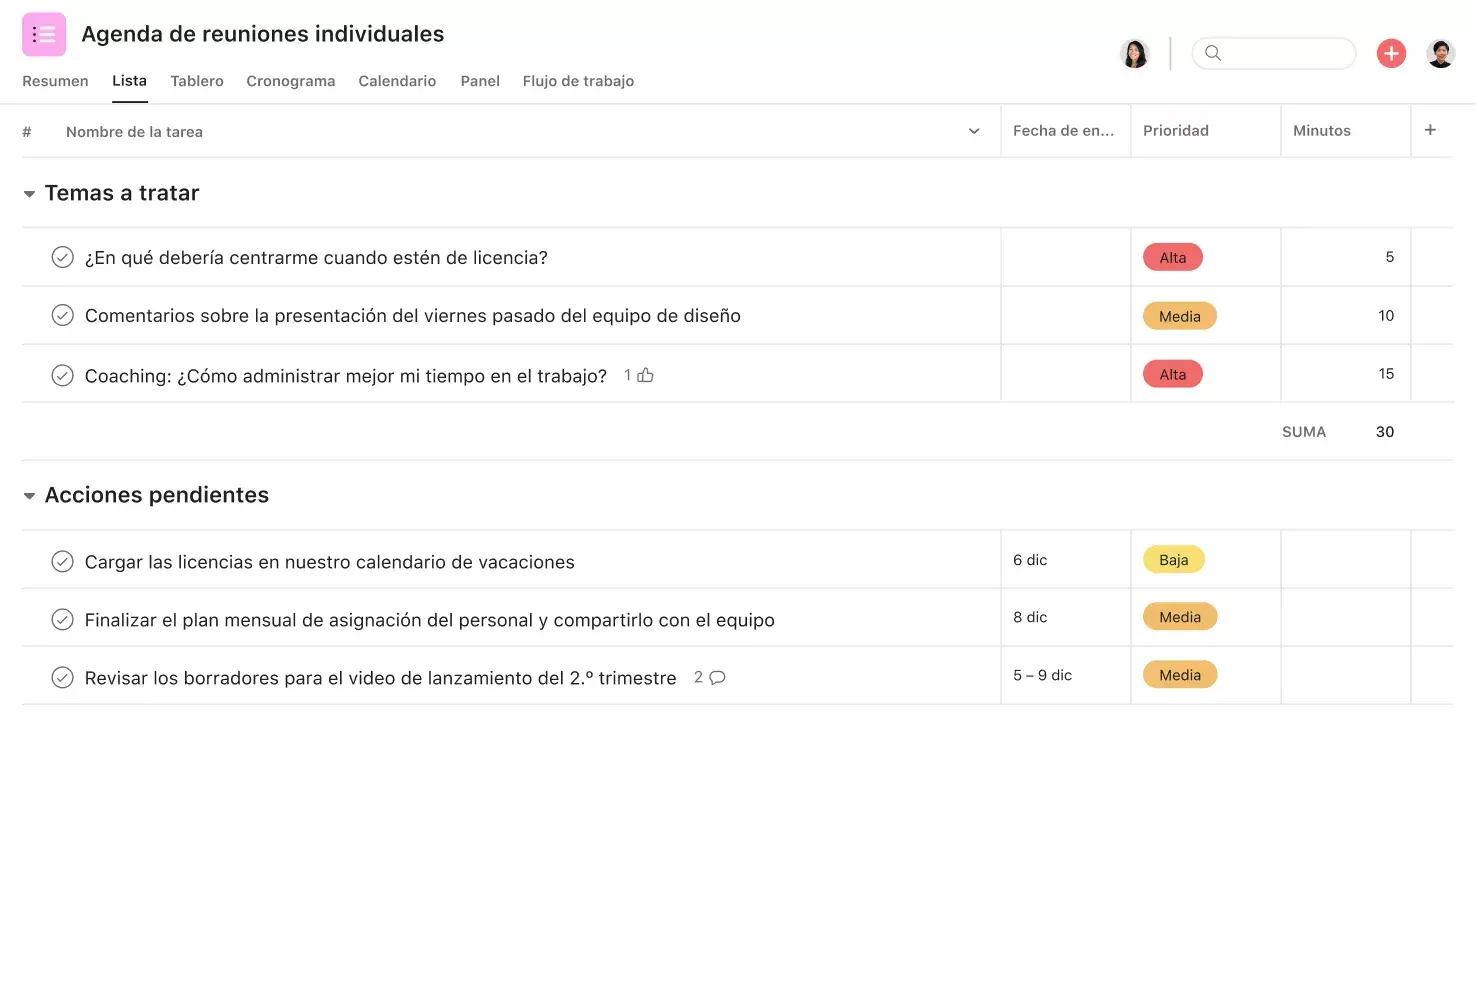 [Interfaz de usuario del producto] Plantilla de agenda de reunión individual con temas a tratar, acciones pendientes y prioridad de los temas (vista de lista)